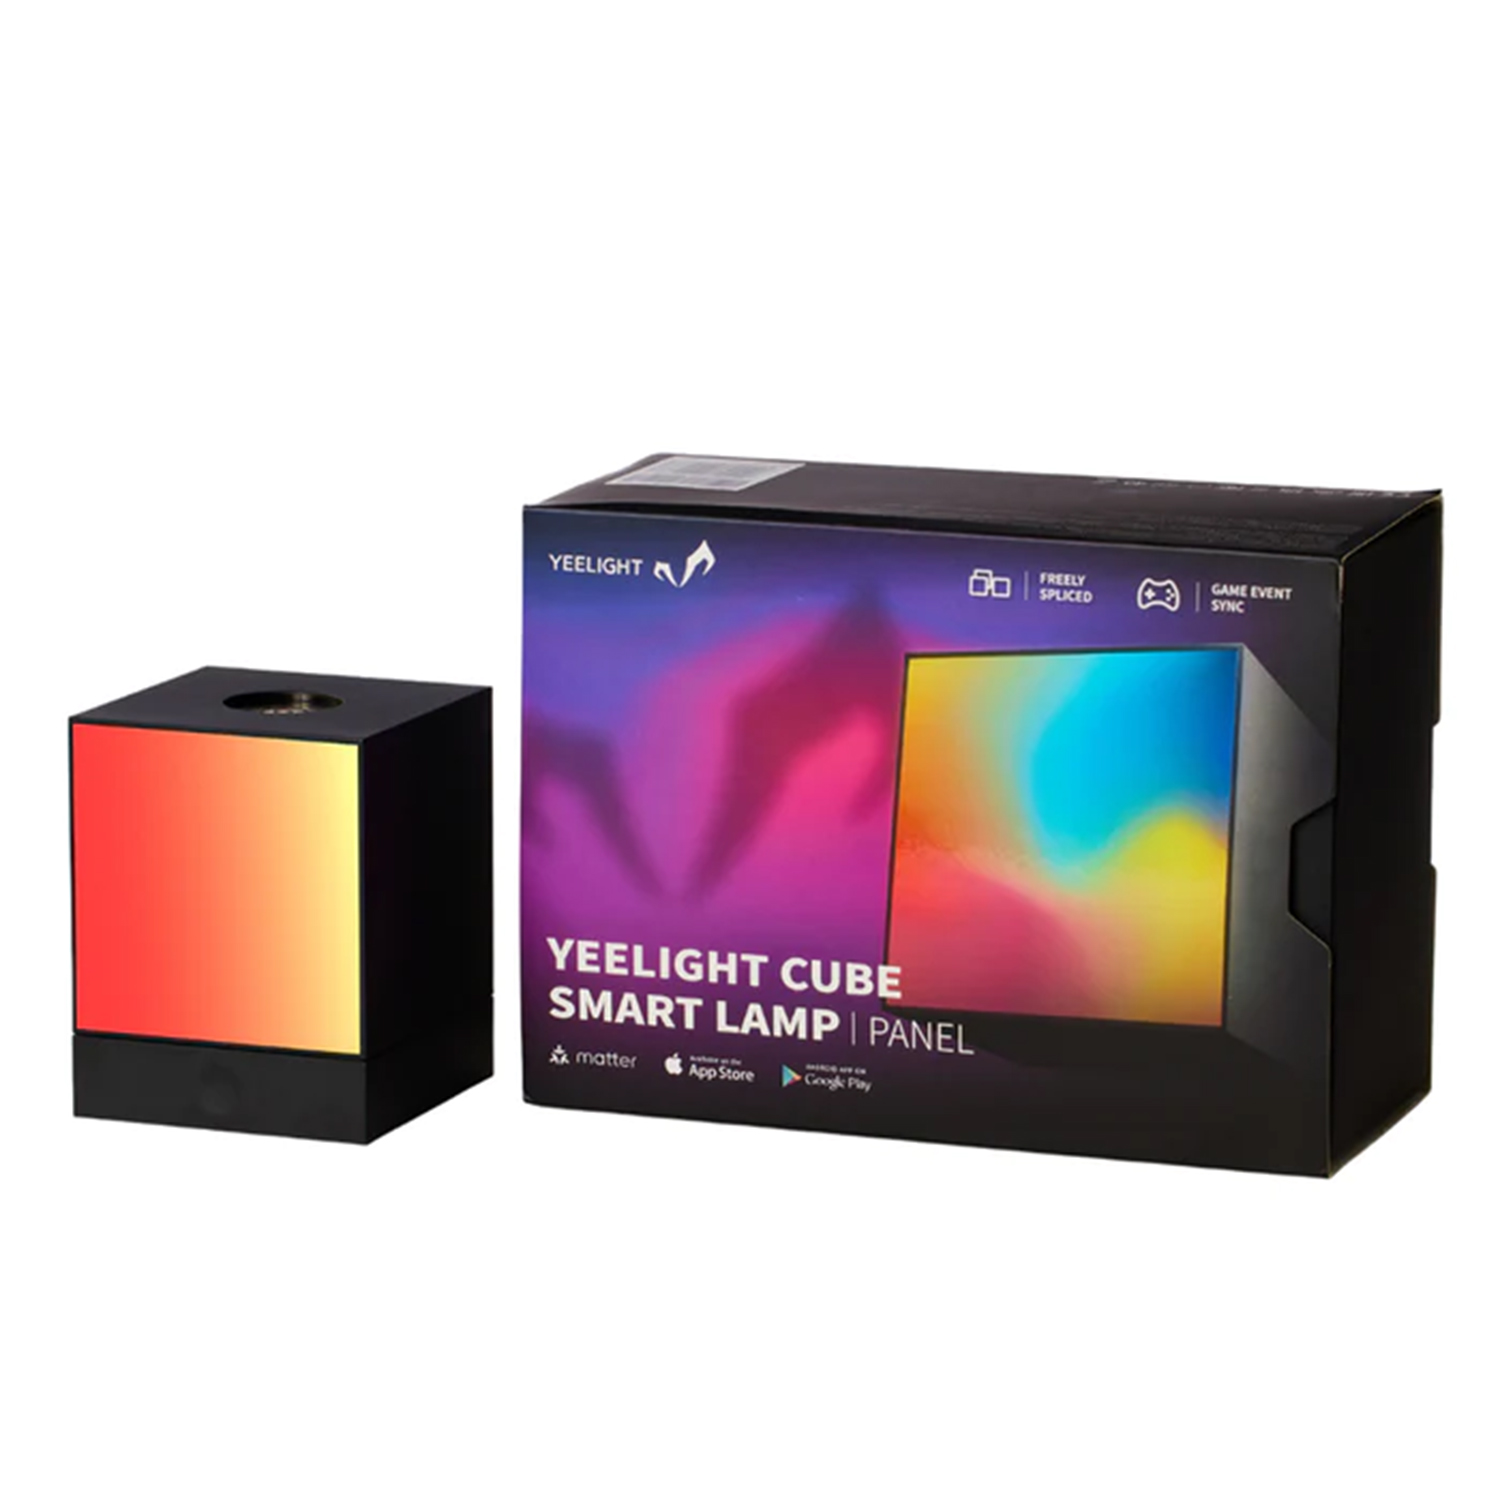 YEELIGHT Cube Smart Lamp - Light Gaming Cube Panel and Basisstation WLAN matter